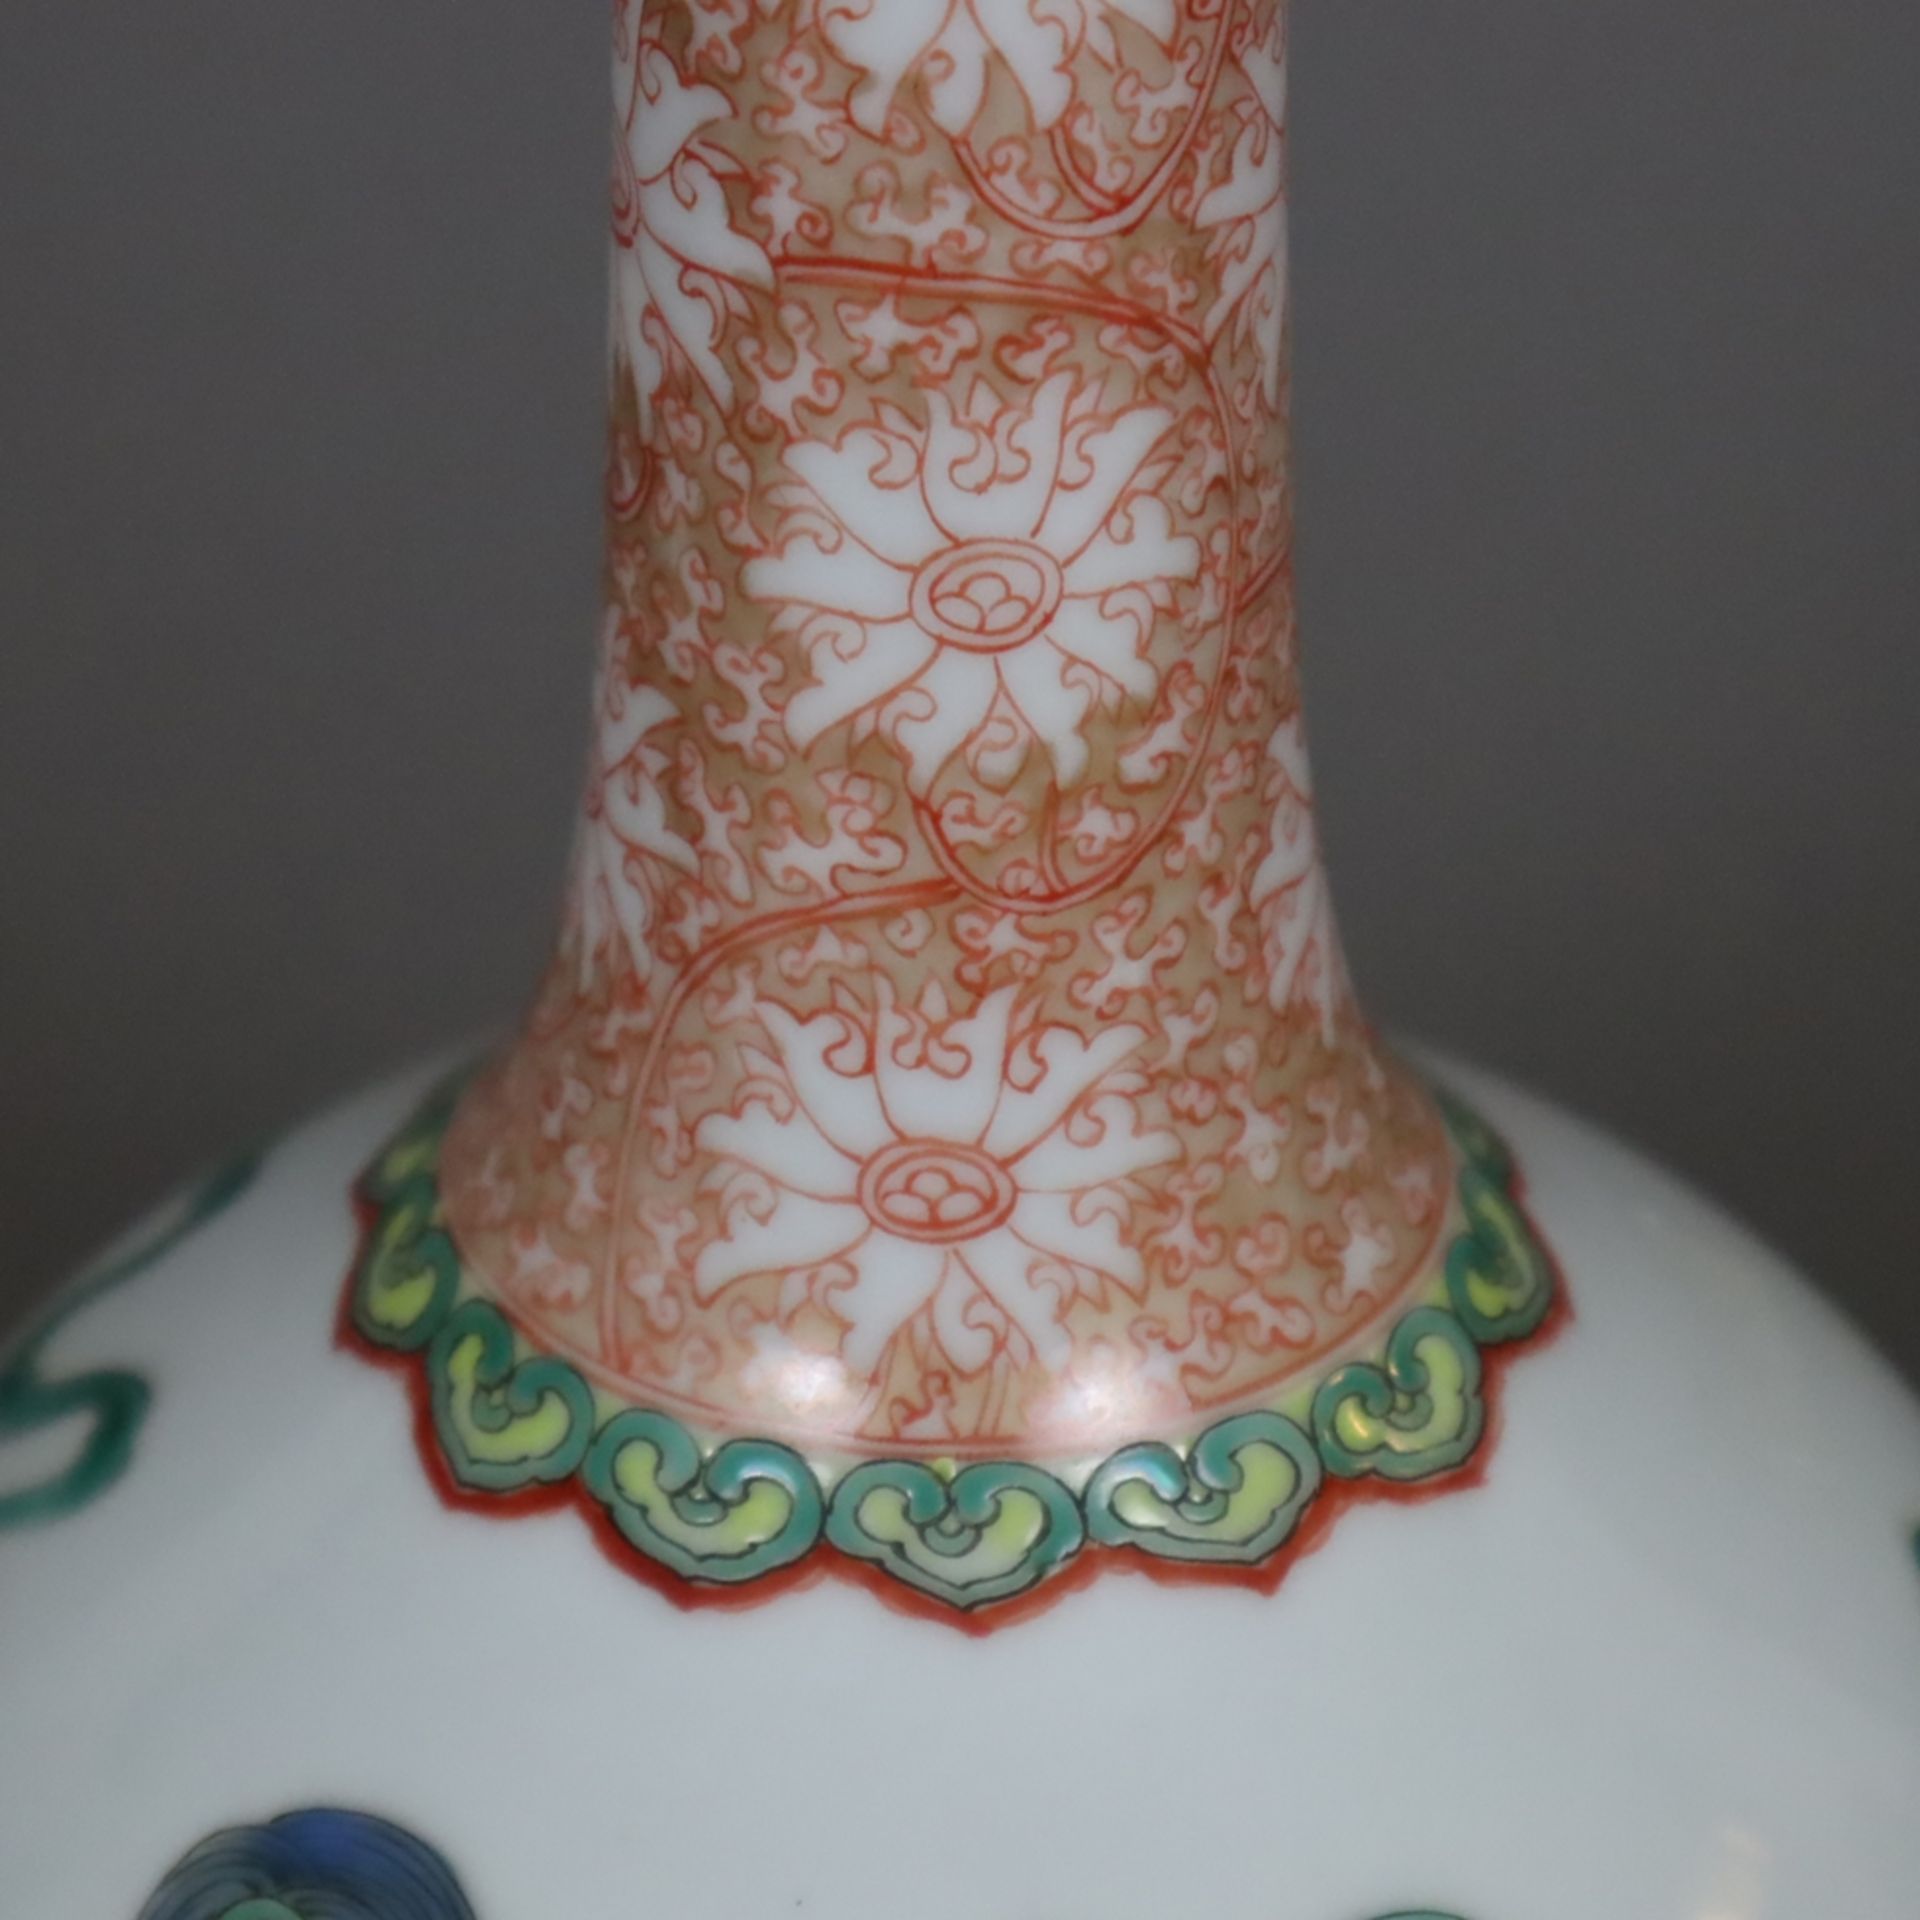 Flaschenvase - China, Porzellan, umlaufend spielende Shishis mit Brokatbällen sowie Blüten-, Ruyiko - Bild 3 aus 9